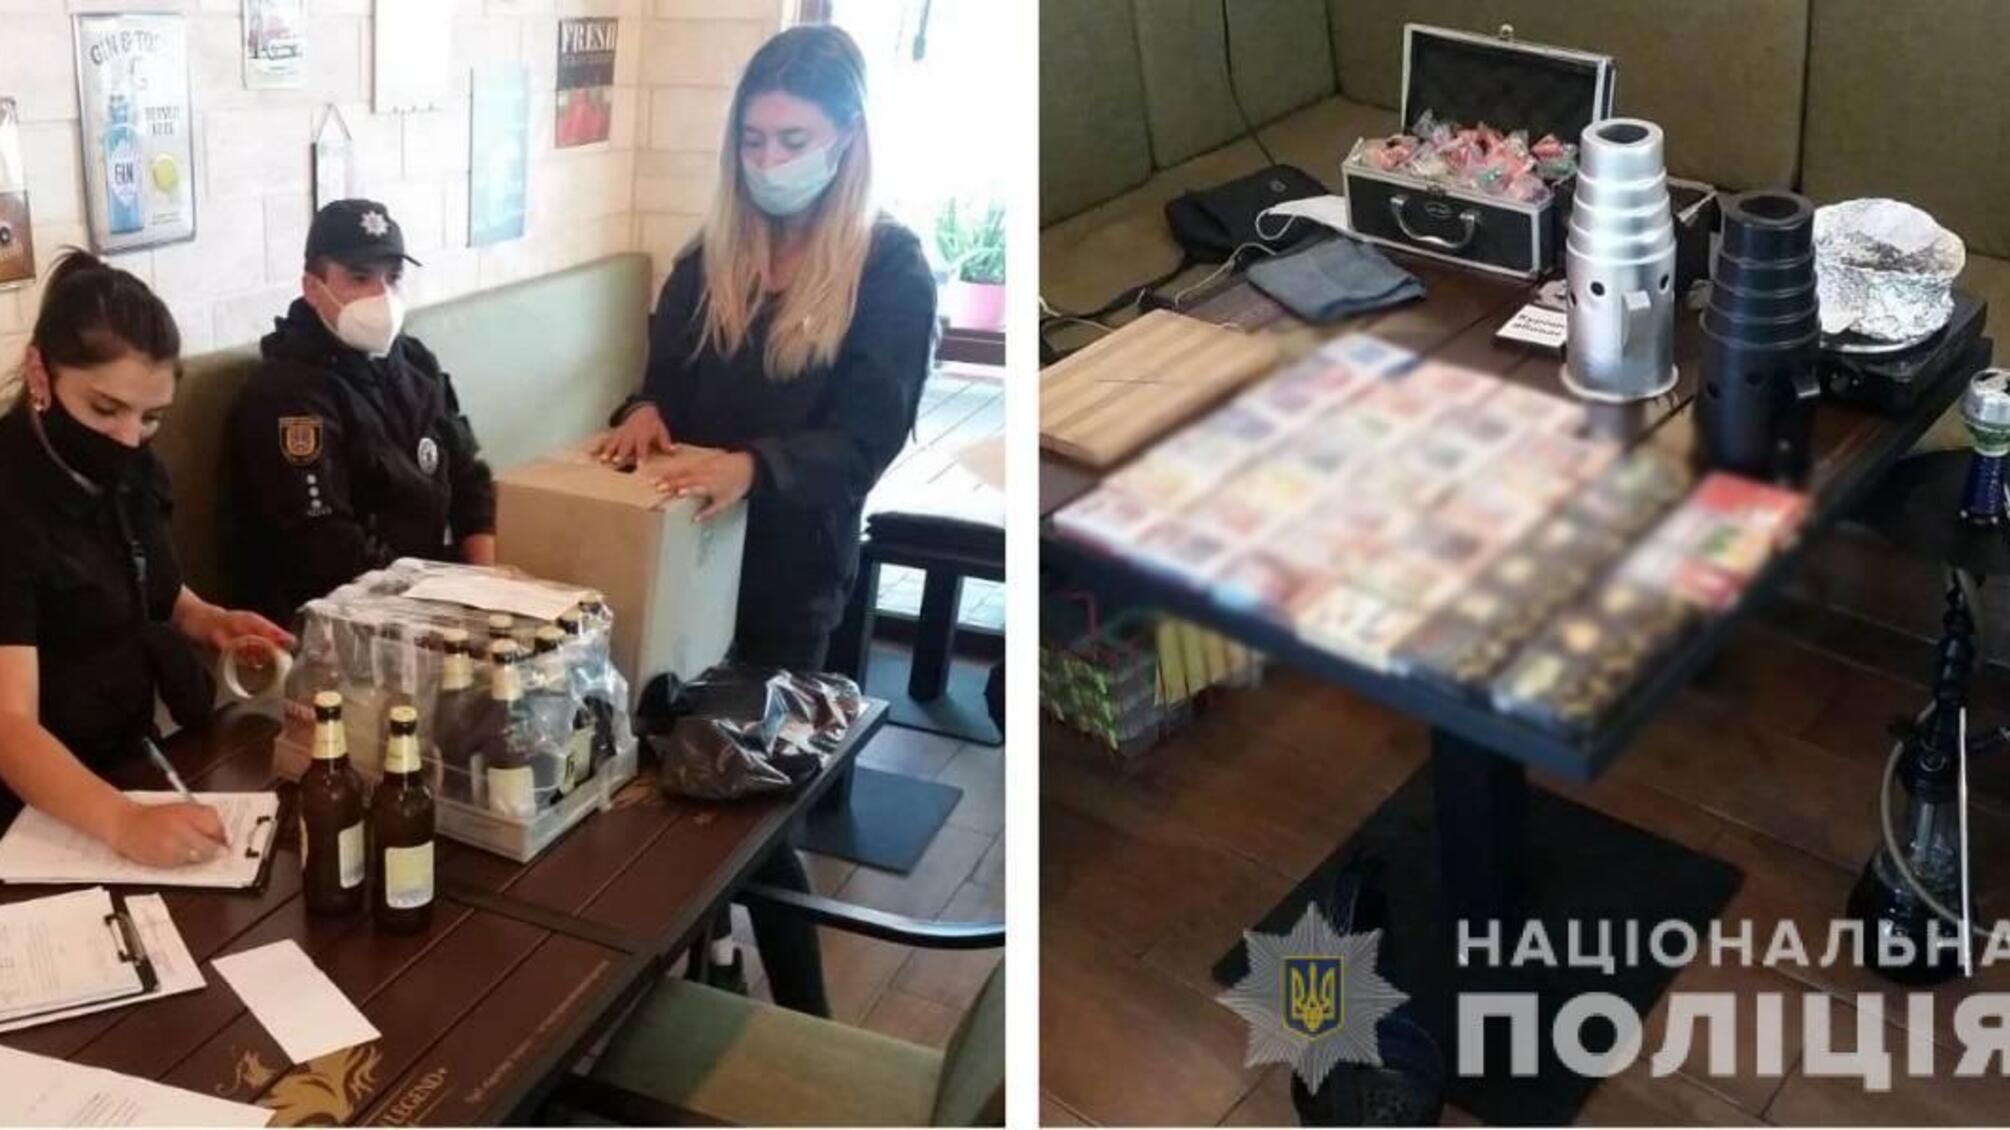 Одеські поліцейські притягнули до відповідальності адміністрацію розважального закладу за торгівлю тютюном та алкоголем без ліцензії